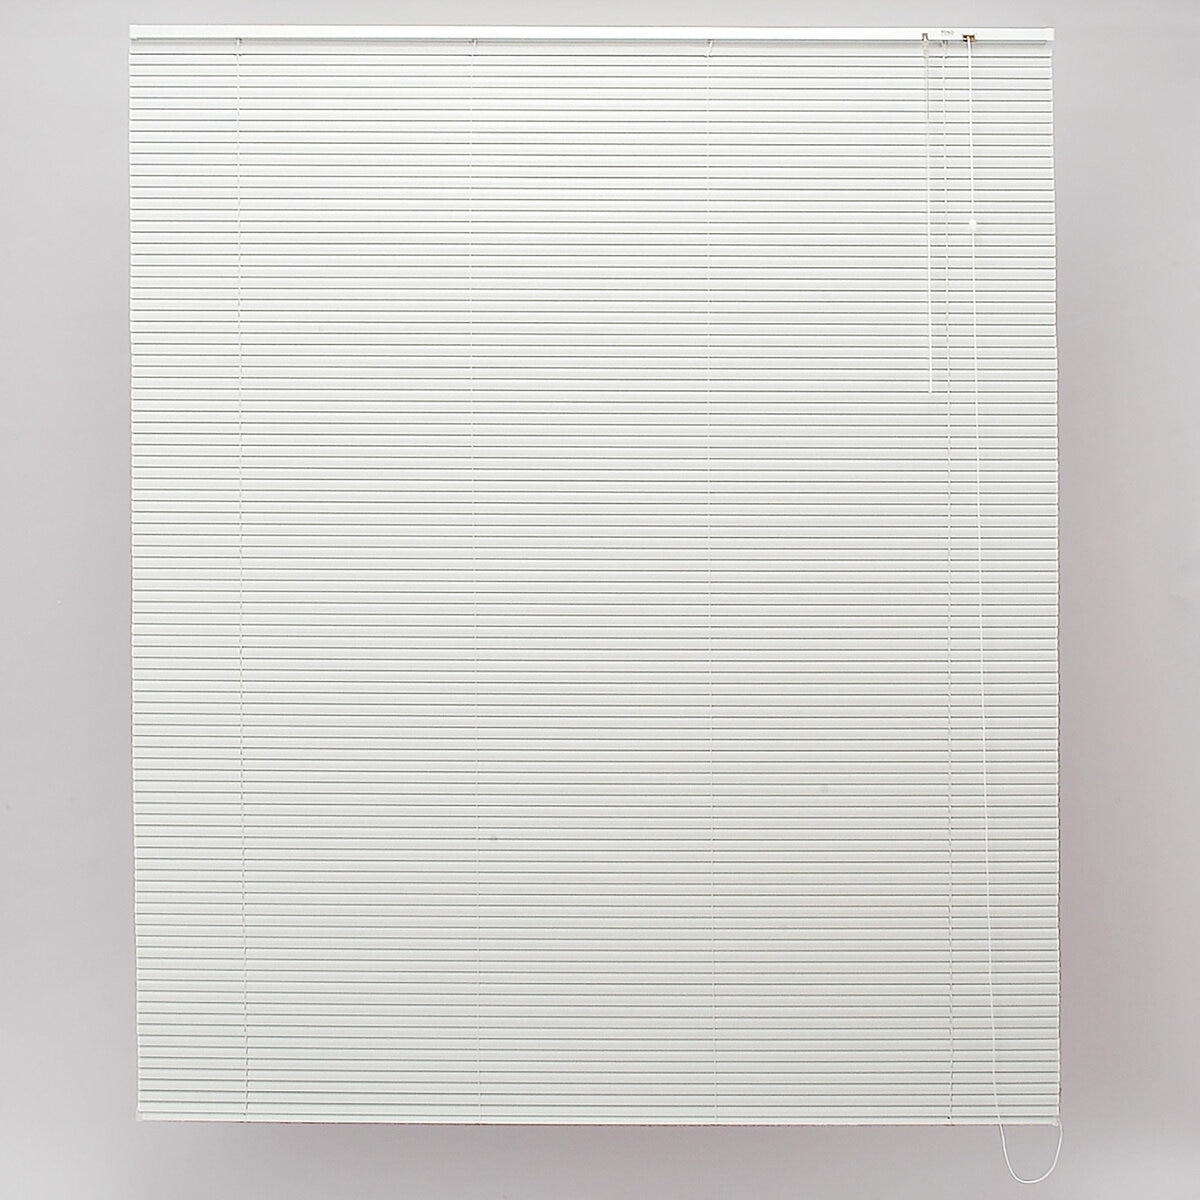 トーソー スポーラR IB アルミブラインド 178 cm x 183 cm ホワイト